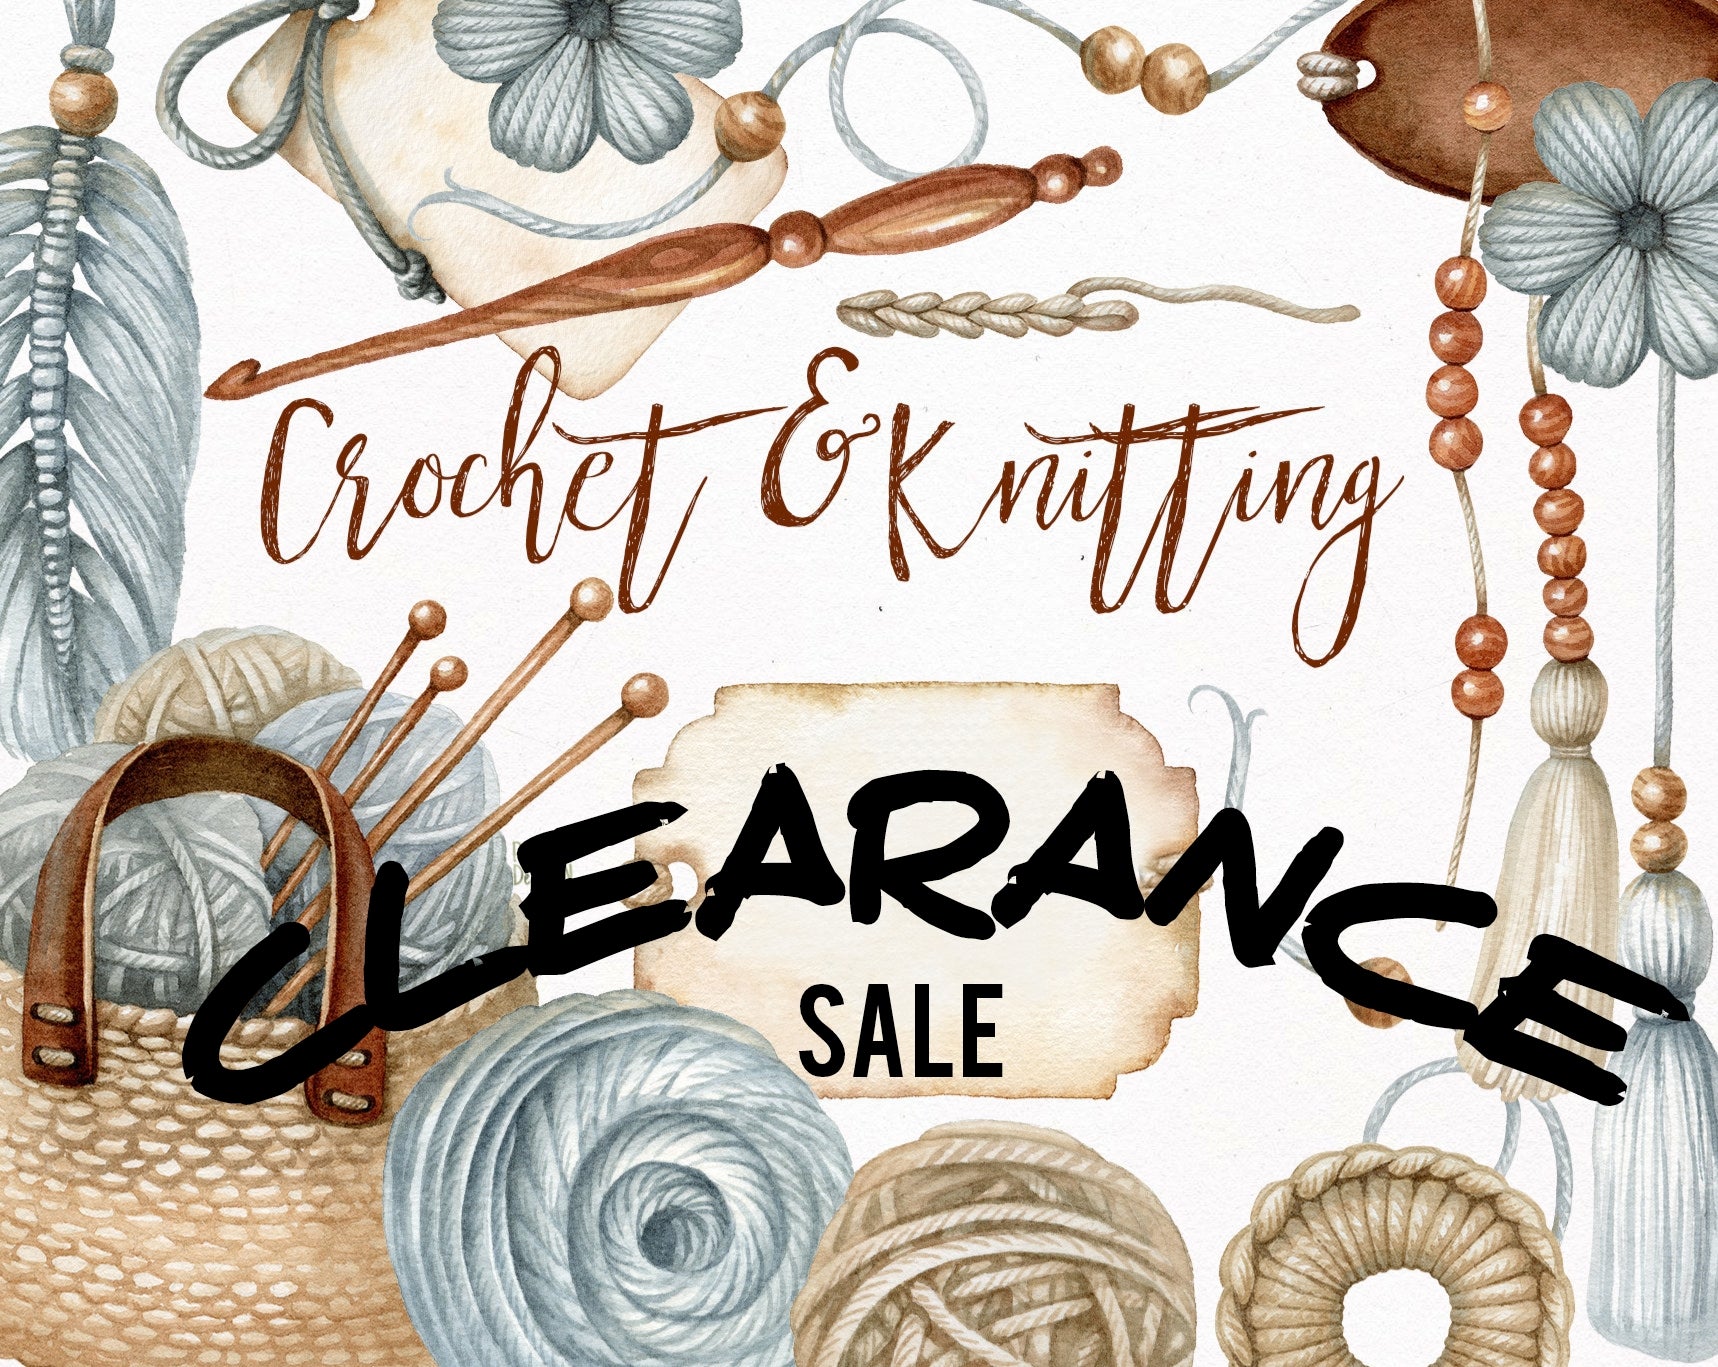 Clearance Yarn Sale 